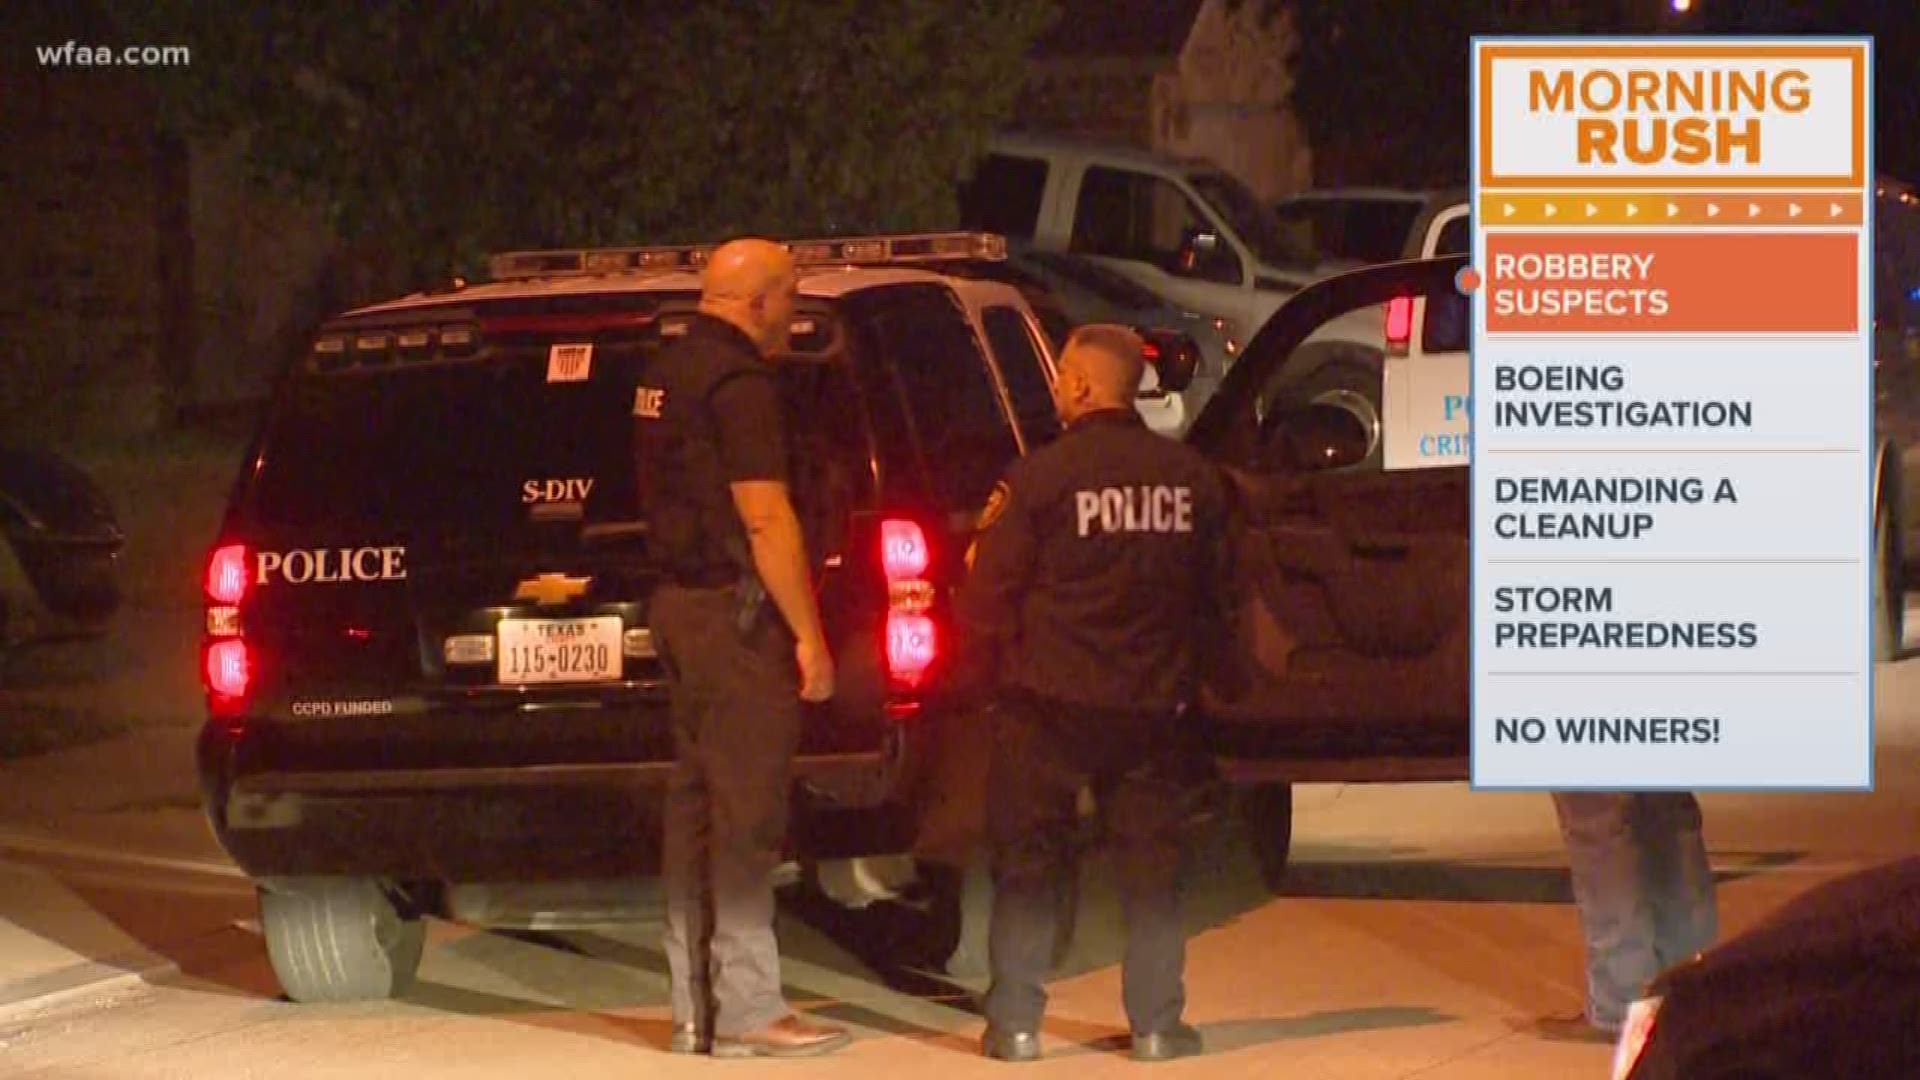 Fort Worth police arrest 3 men suspected in robberies